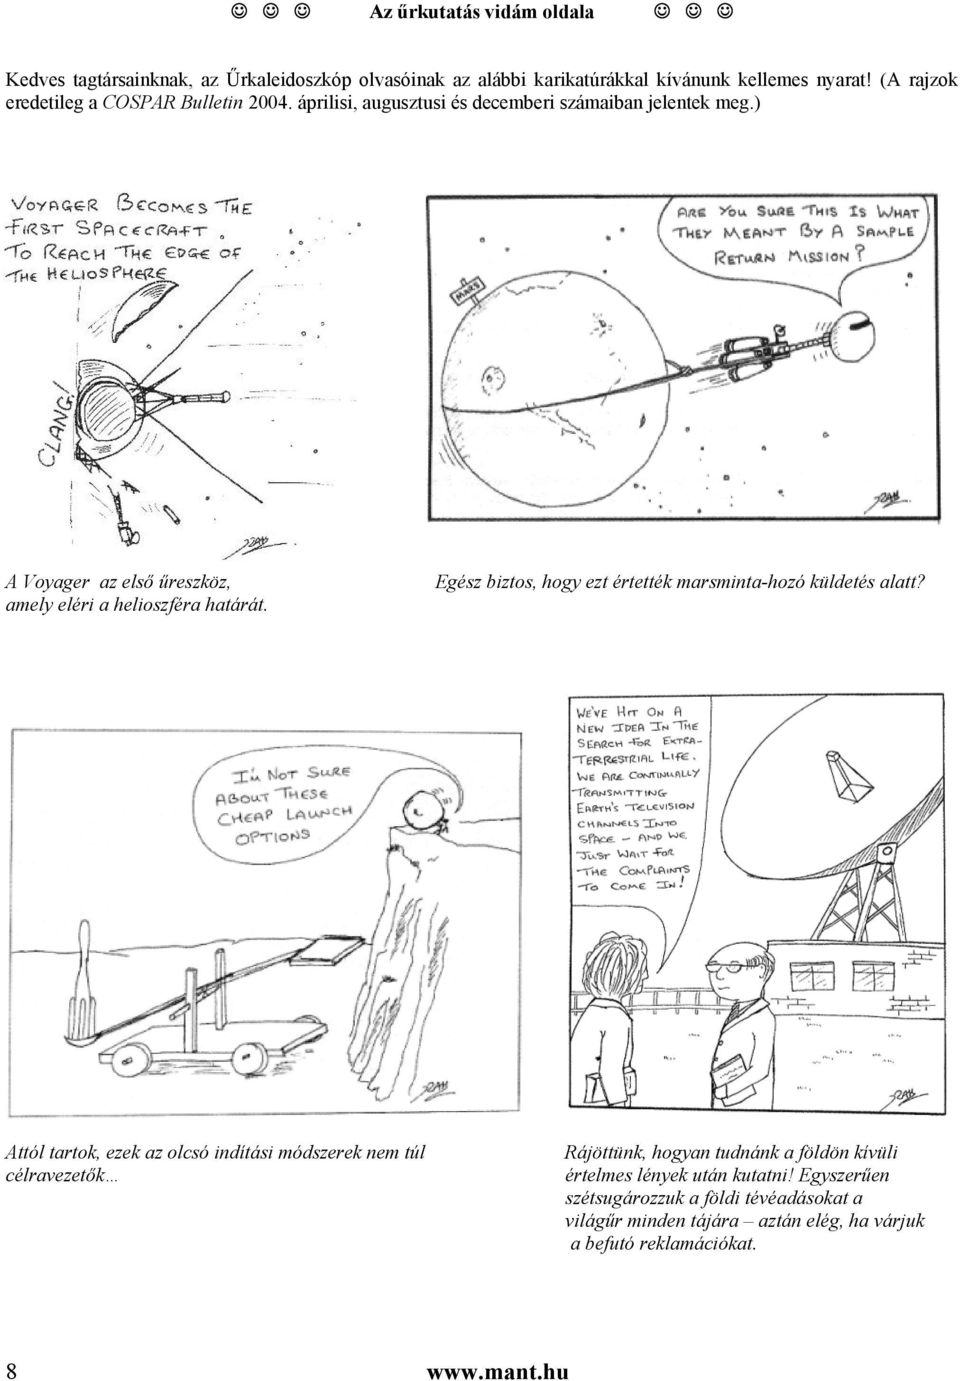 ) A Voyager az első űreszköz, amely eléri a helioszféra határát. Egész biztos, hogy ezt értették marsminta-hozó küldetés alatt?